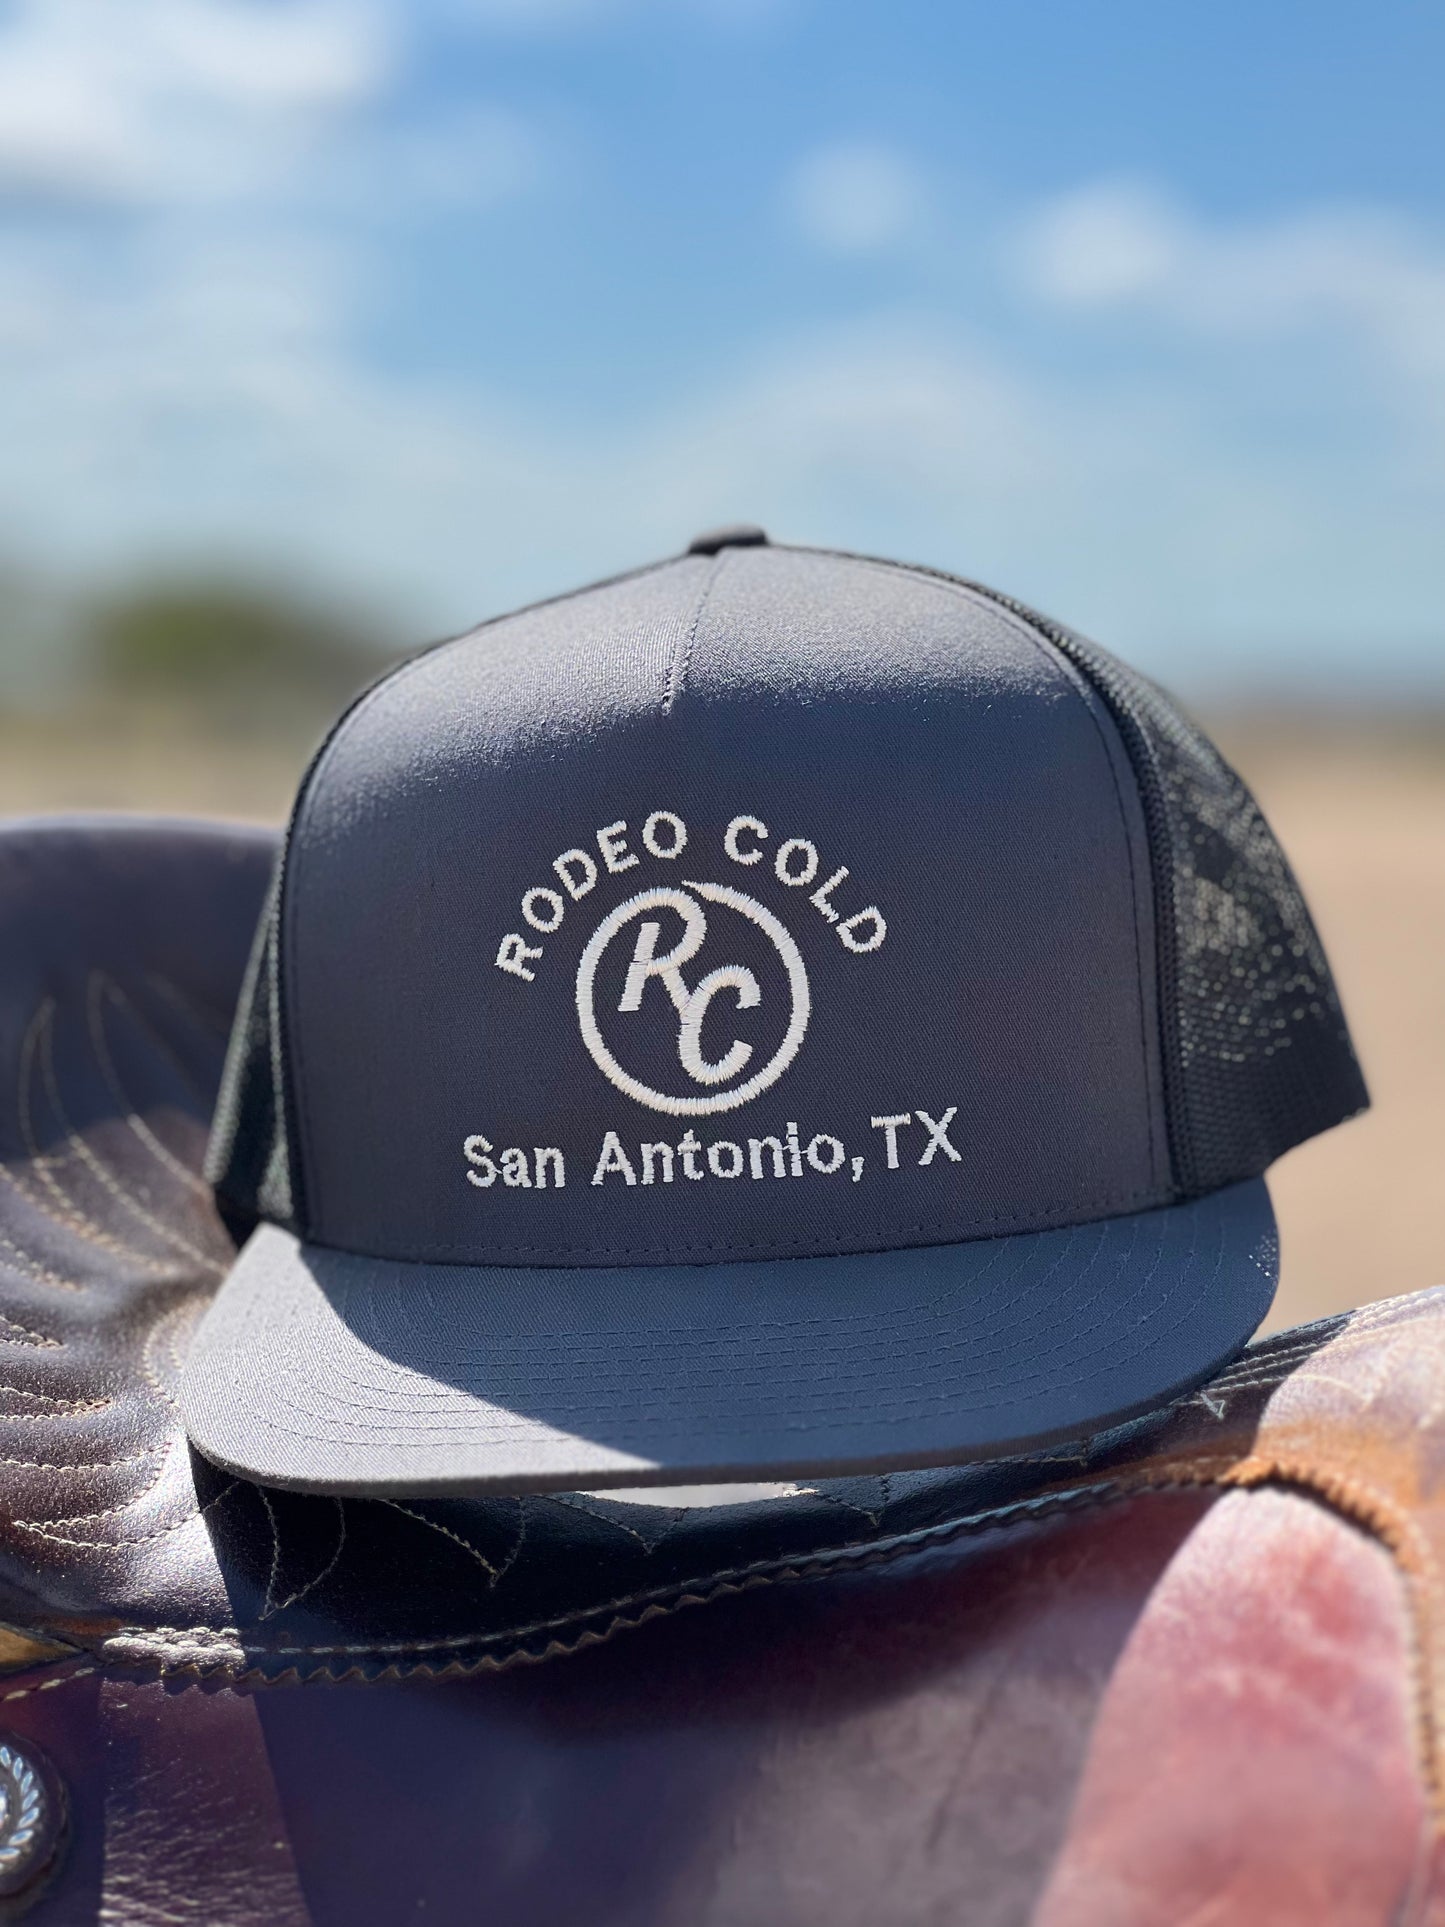 The OG Rodeo Cold Hat